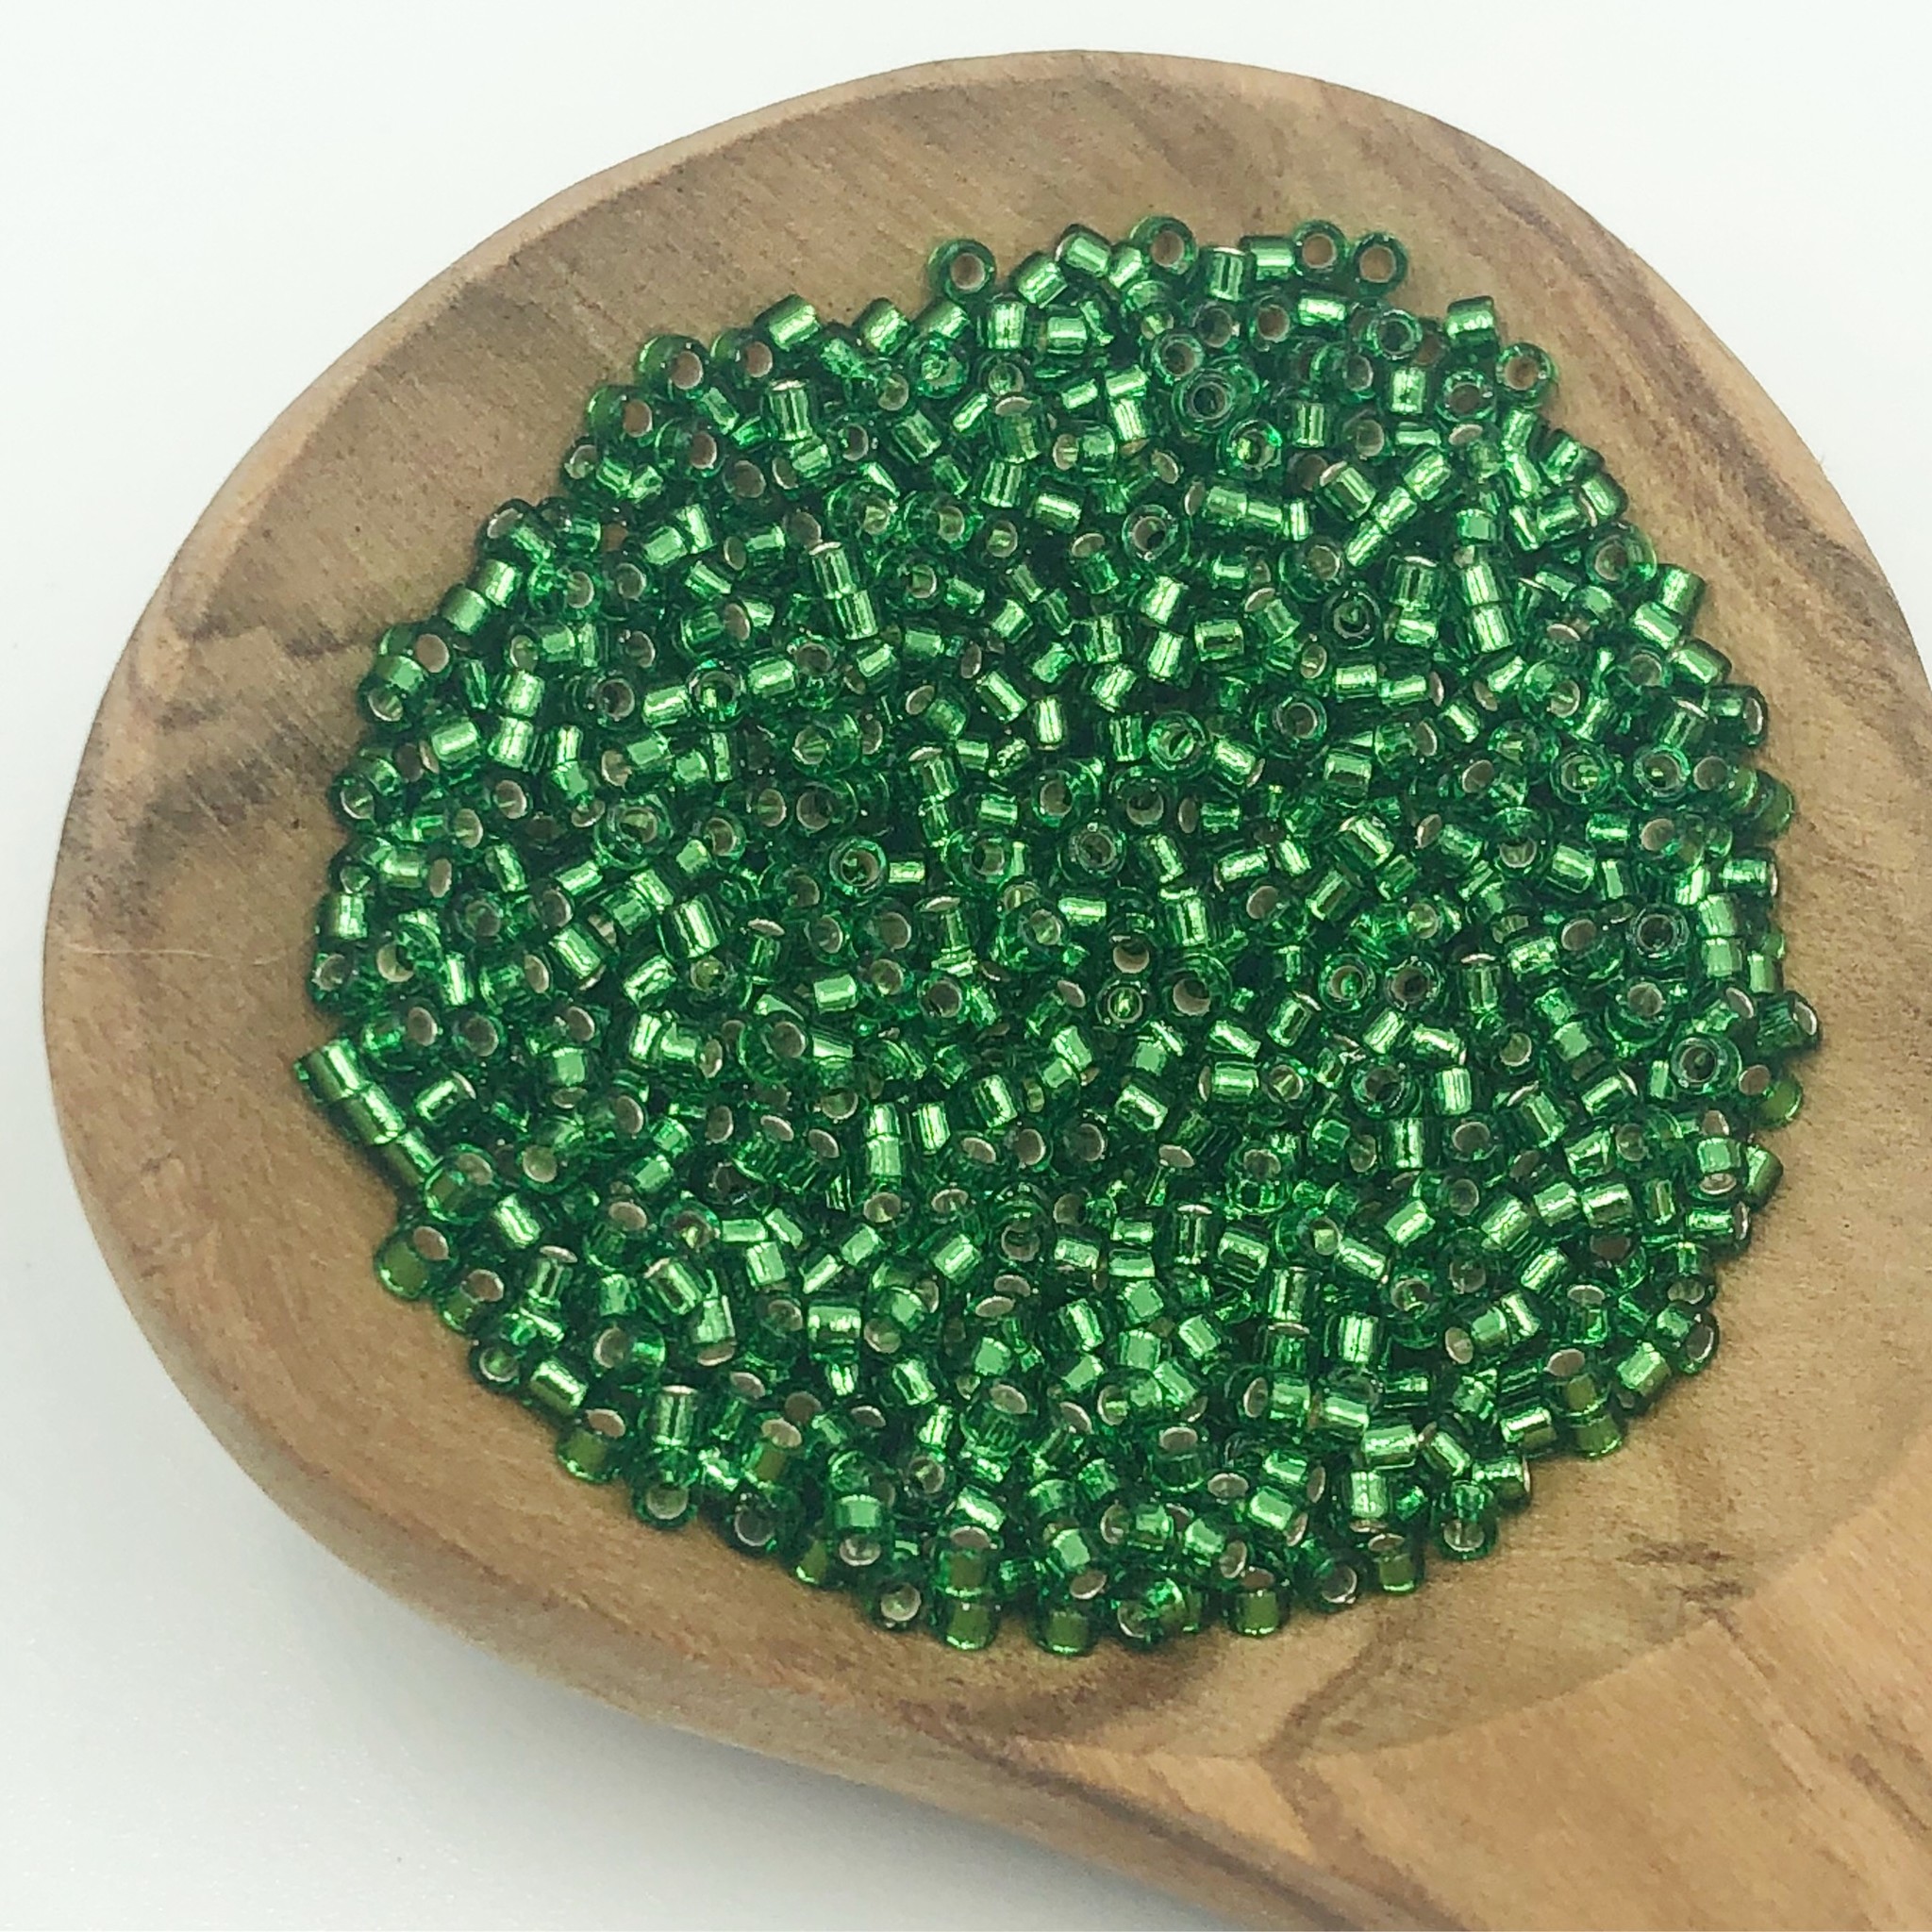 Miyuki Delica Seed Beads, 11/0 Size Metallic Green Teal DB00